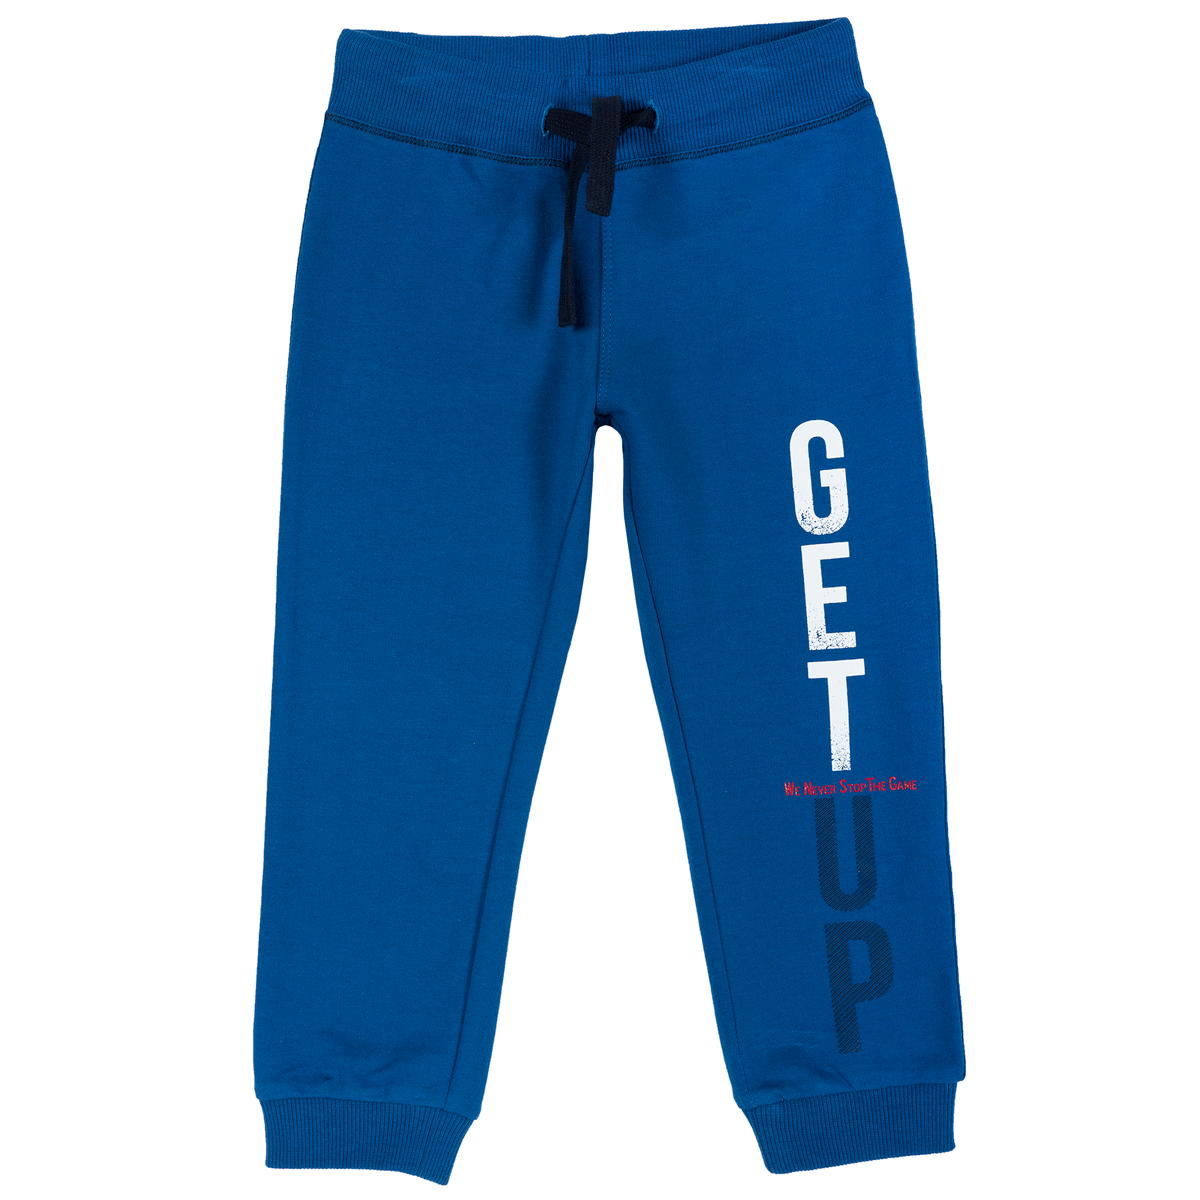 Pantalon trening copii, mansete elastice, albastru deschis, 24919